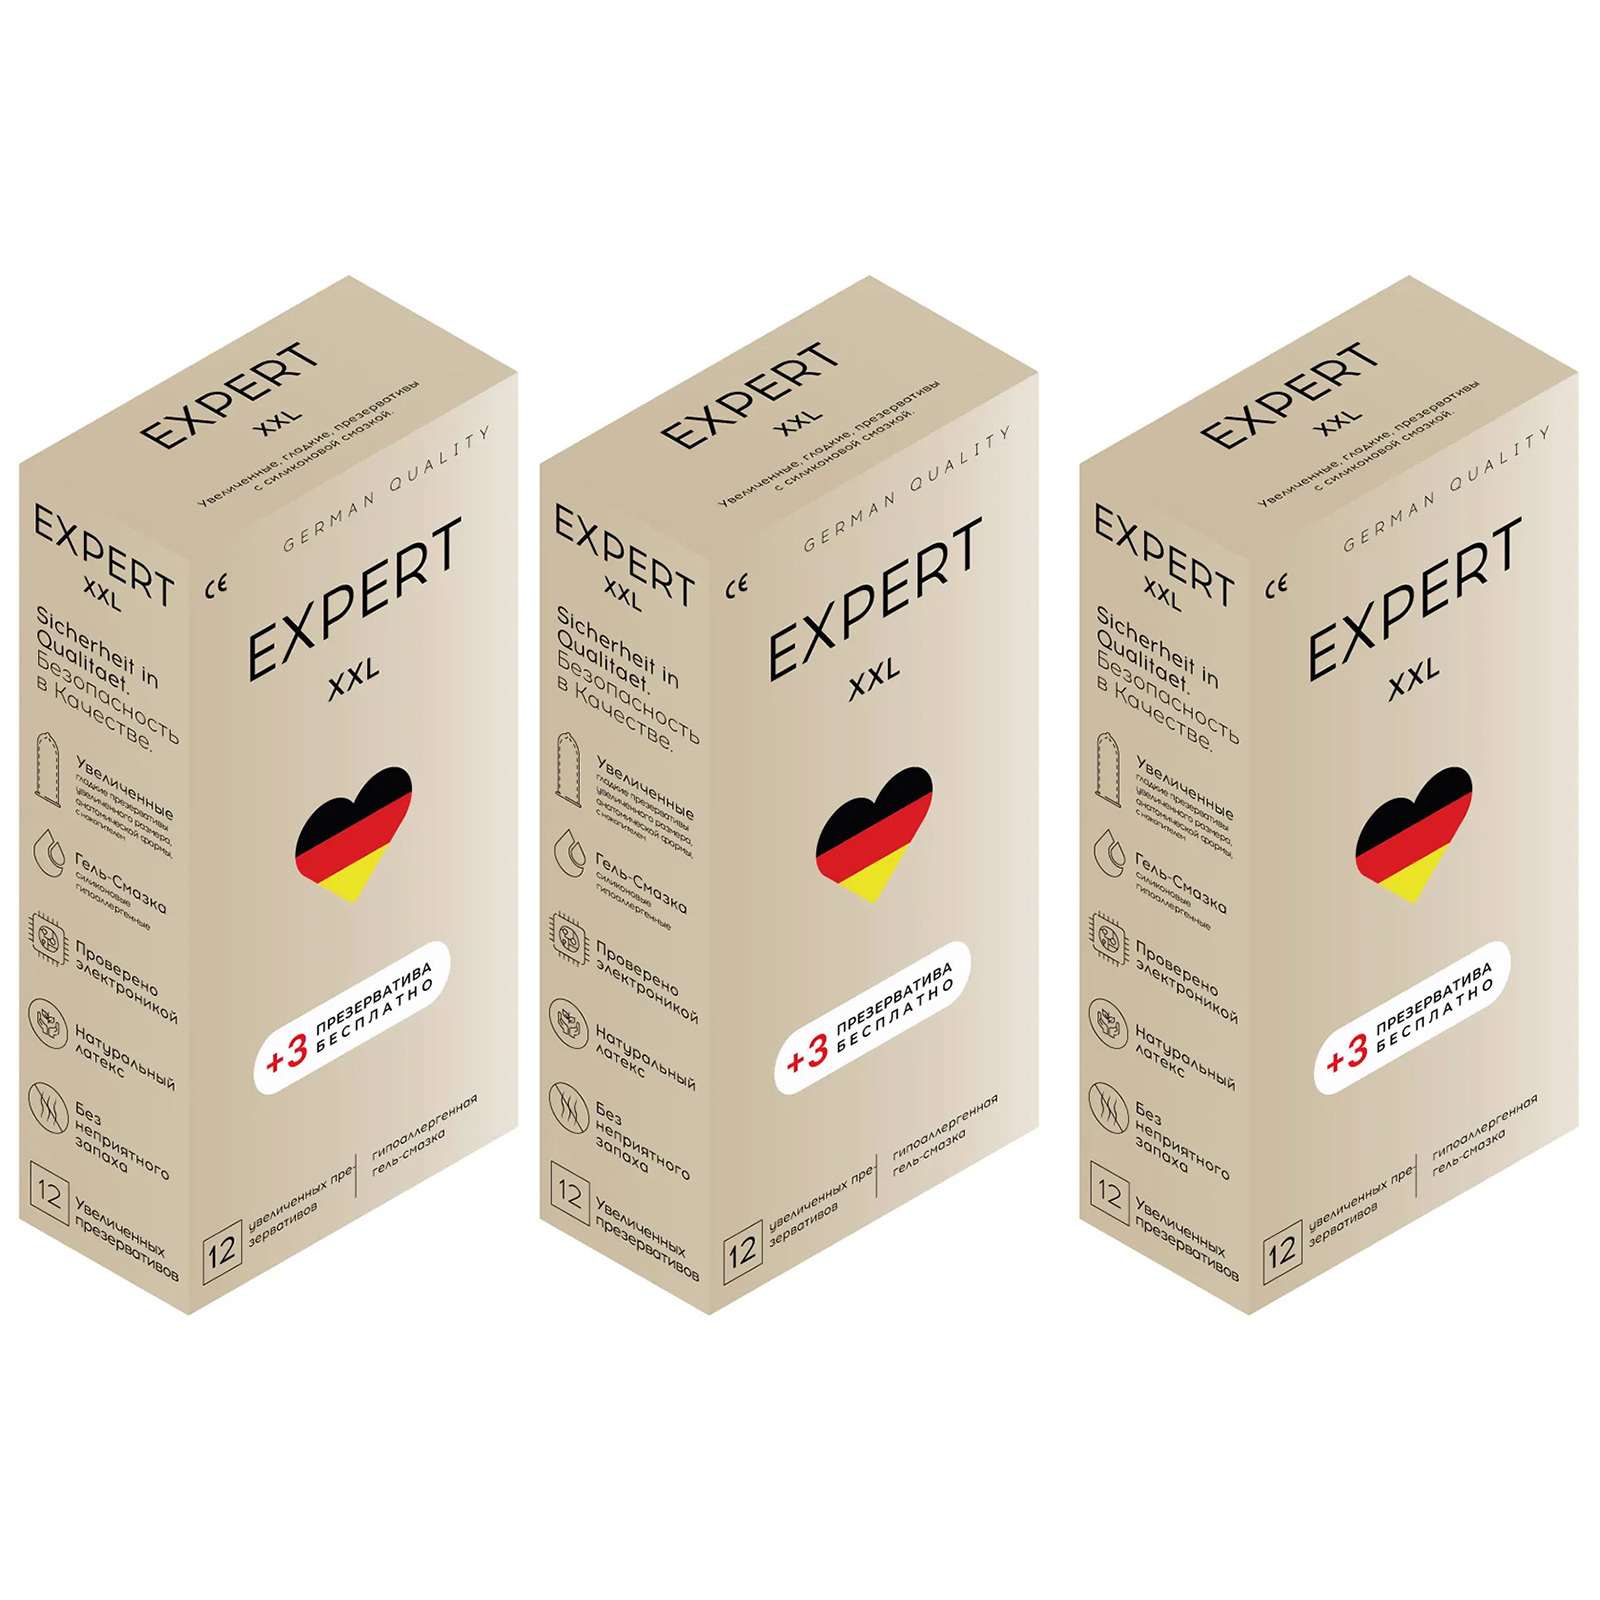 Презервативы EXPERT XXL Germany увеличенного размера 45 шт.  - купить со скидкой